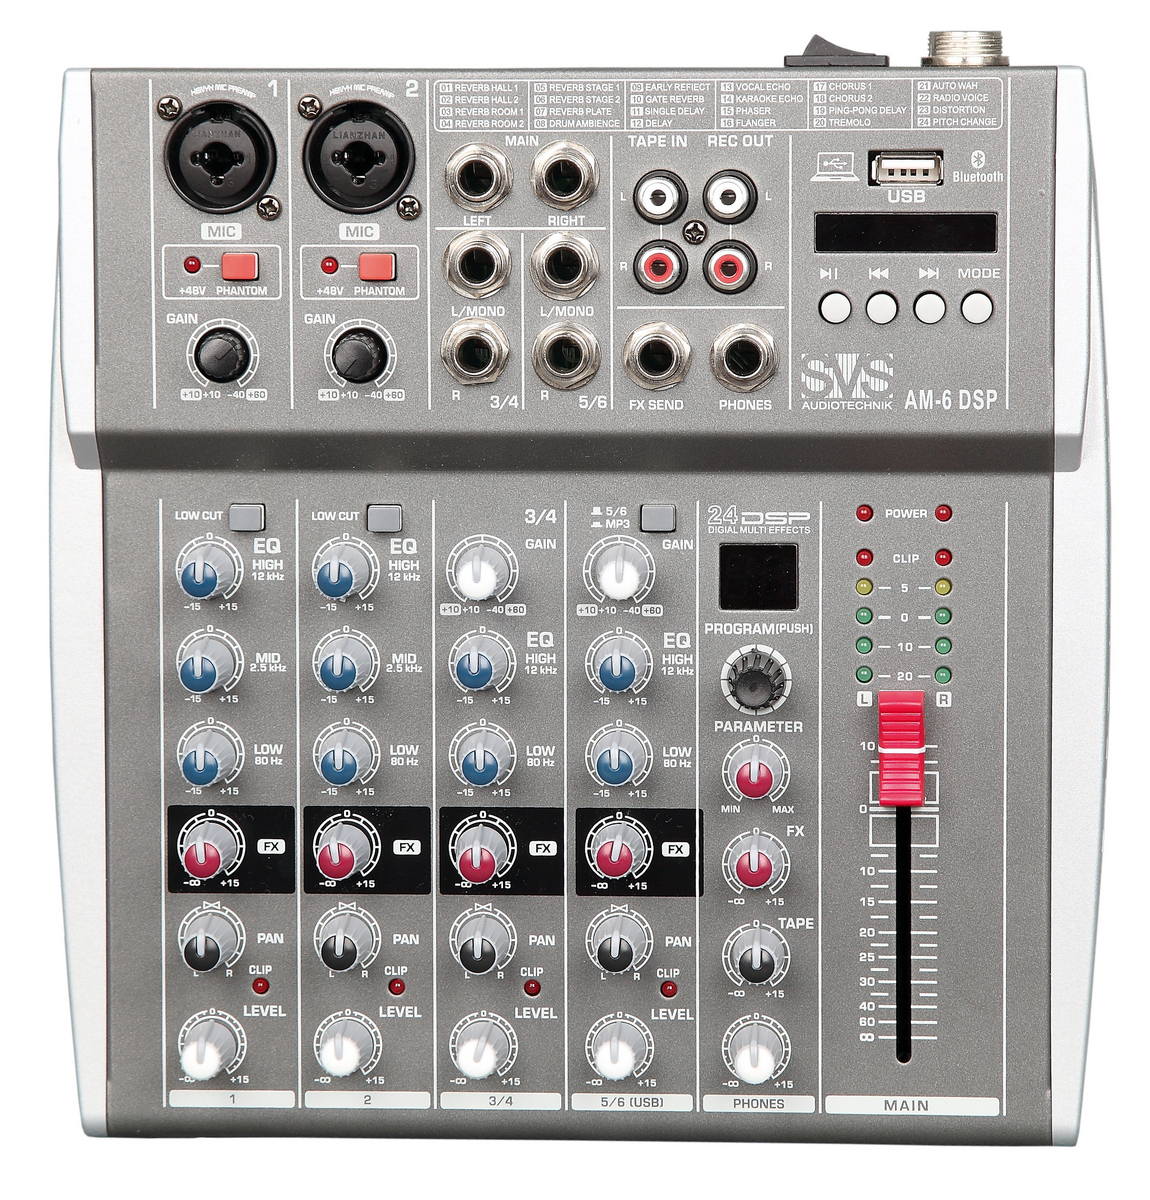 Микшерные пульты аналоговые SVS Audiotechnik mixers AM-6 DSP портативный 4 канальный аудиомикшер b4 usb микшерный пульт